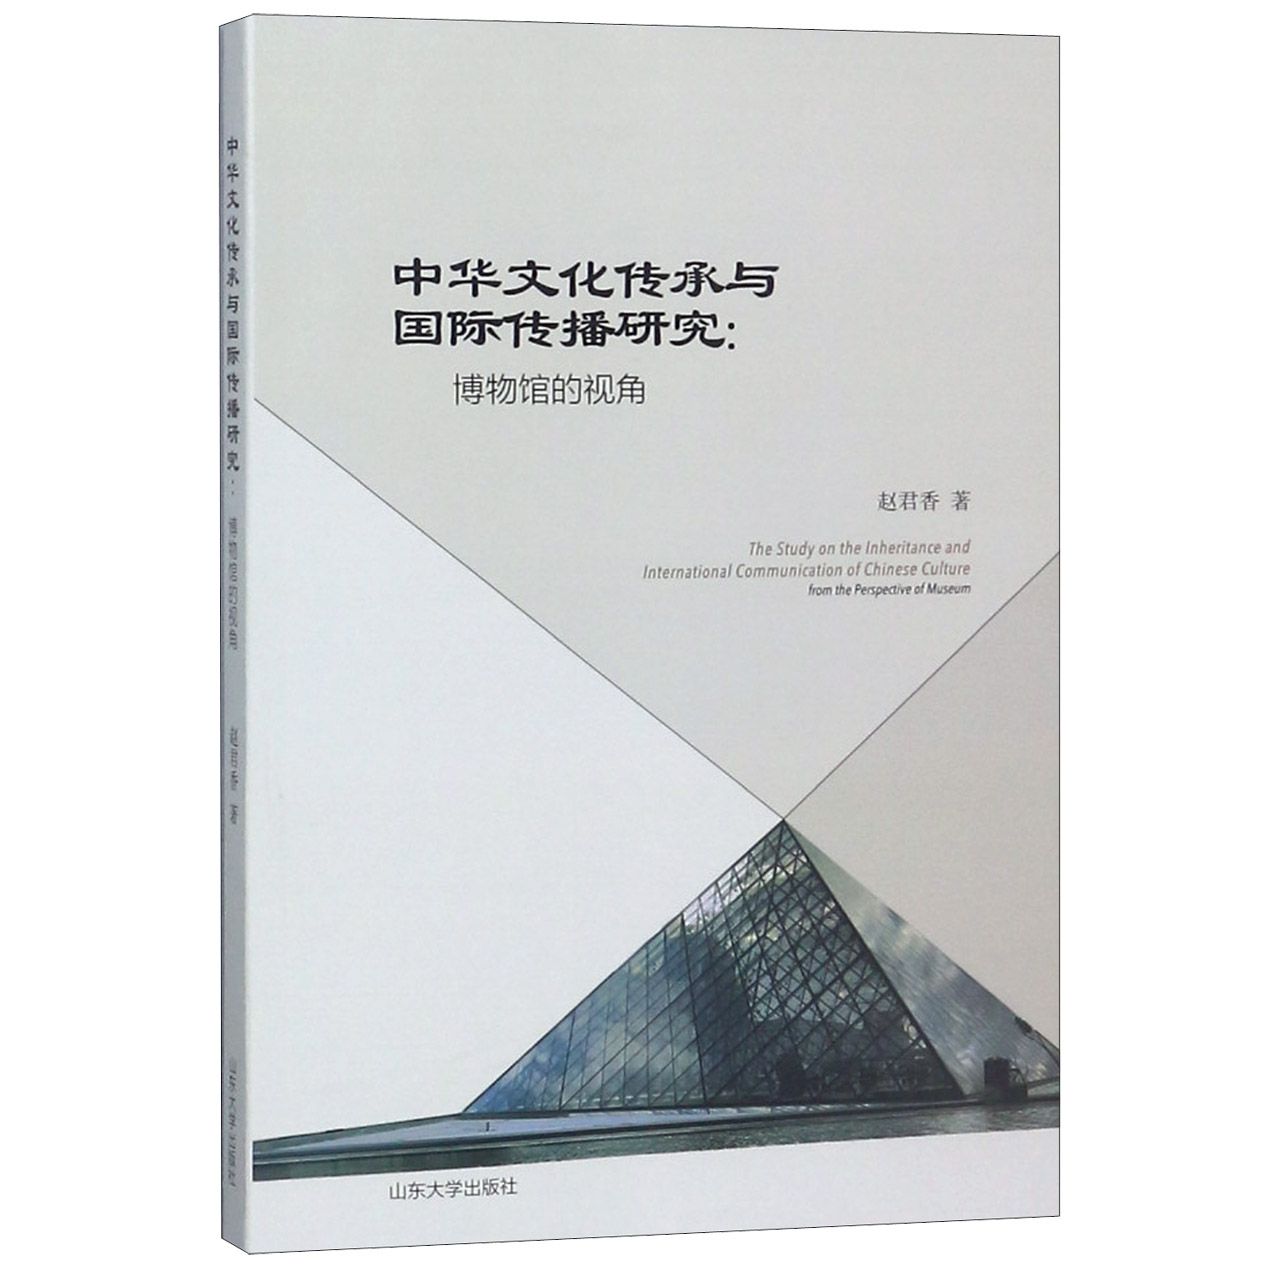 正版图书中华文化传承与国际传播研究--博物馆的视角赵君香山东大学出版社9787560762326